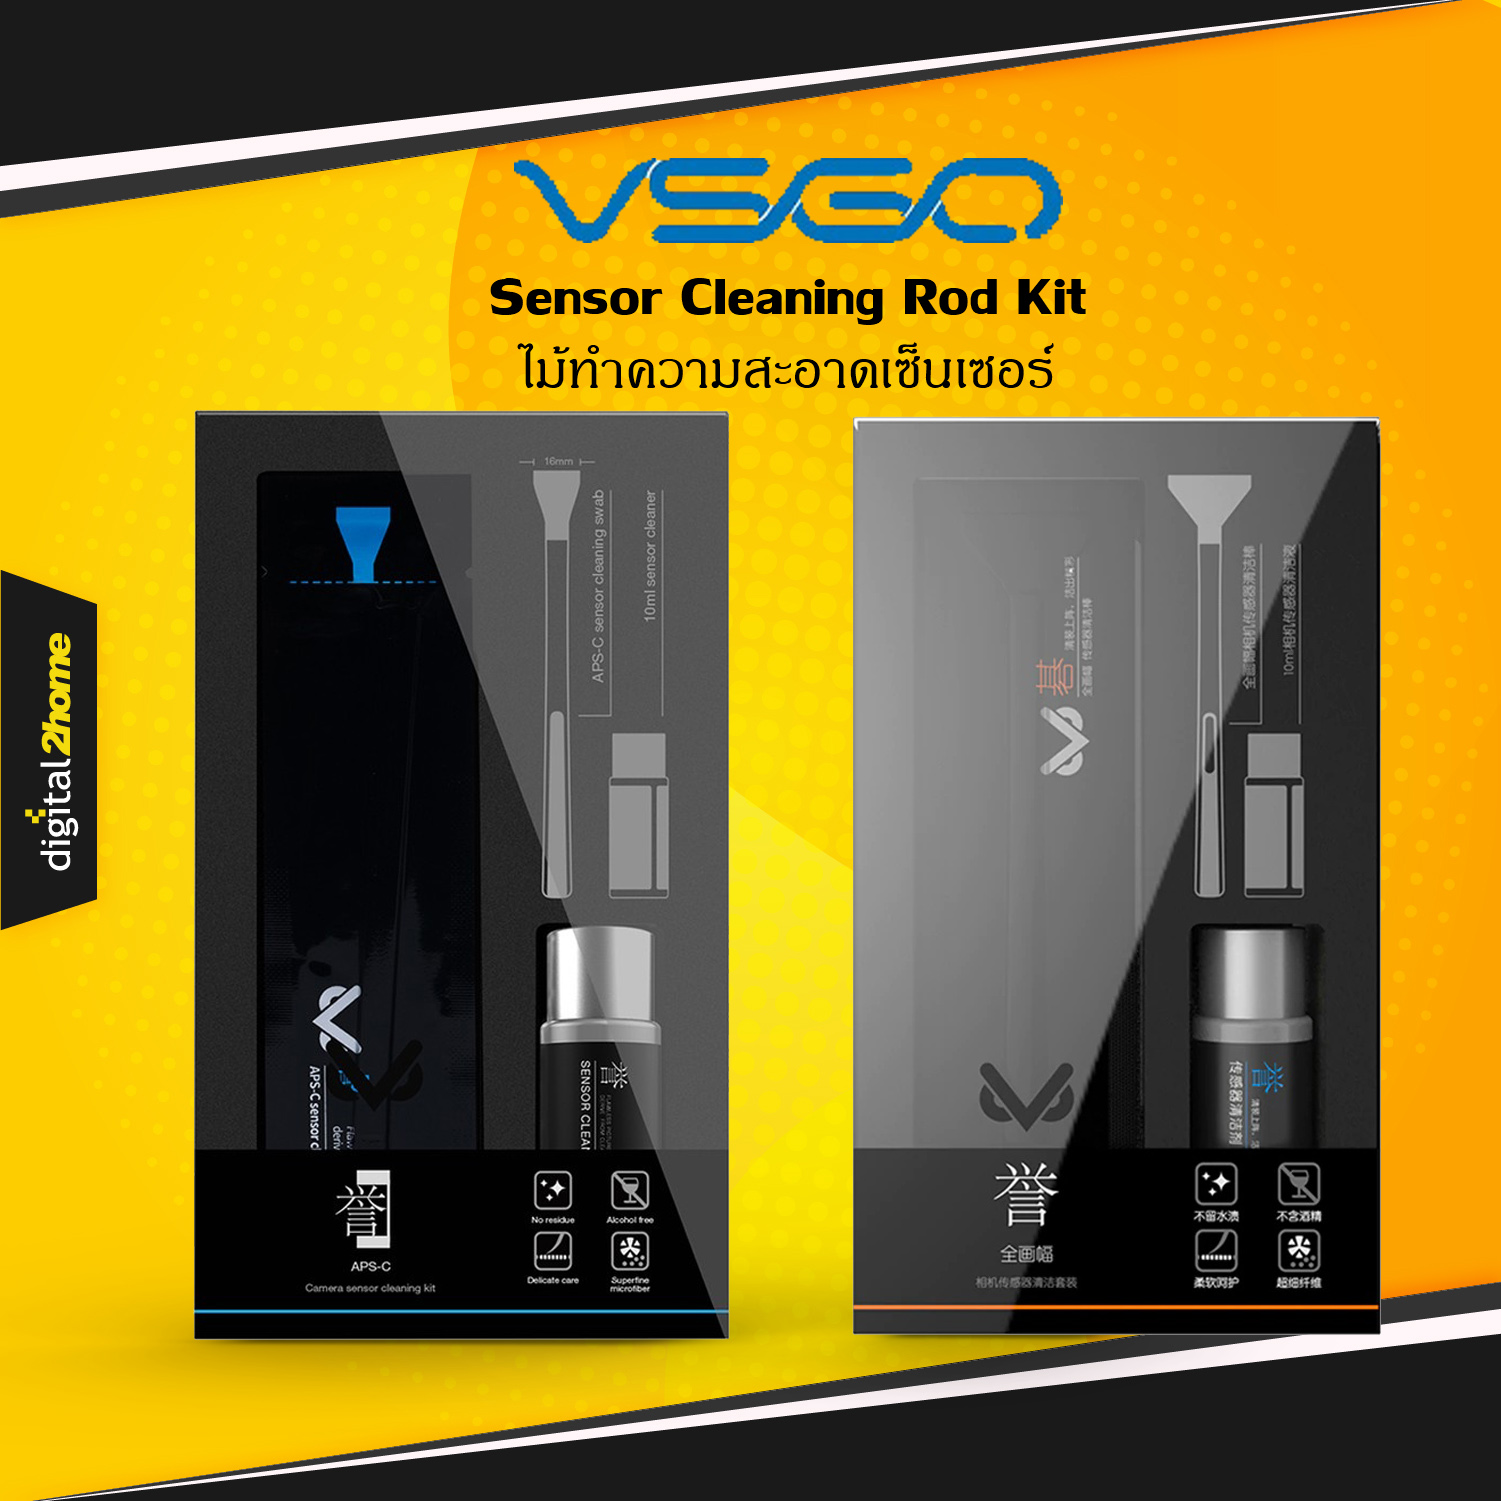 VSGO VS-S02E APS-C Frame Sensor Cleaning Rod Kit